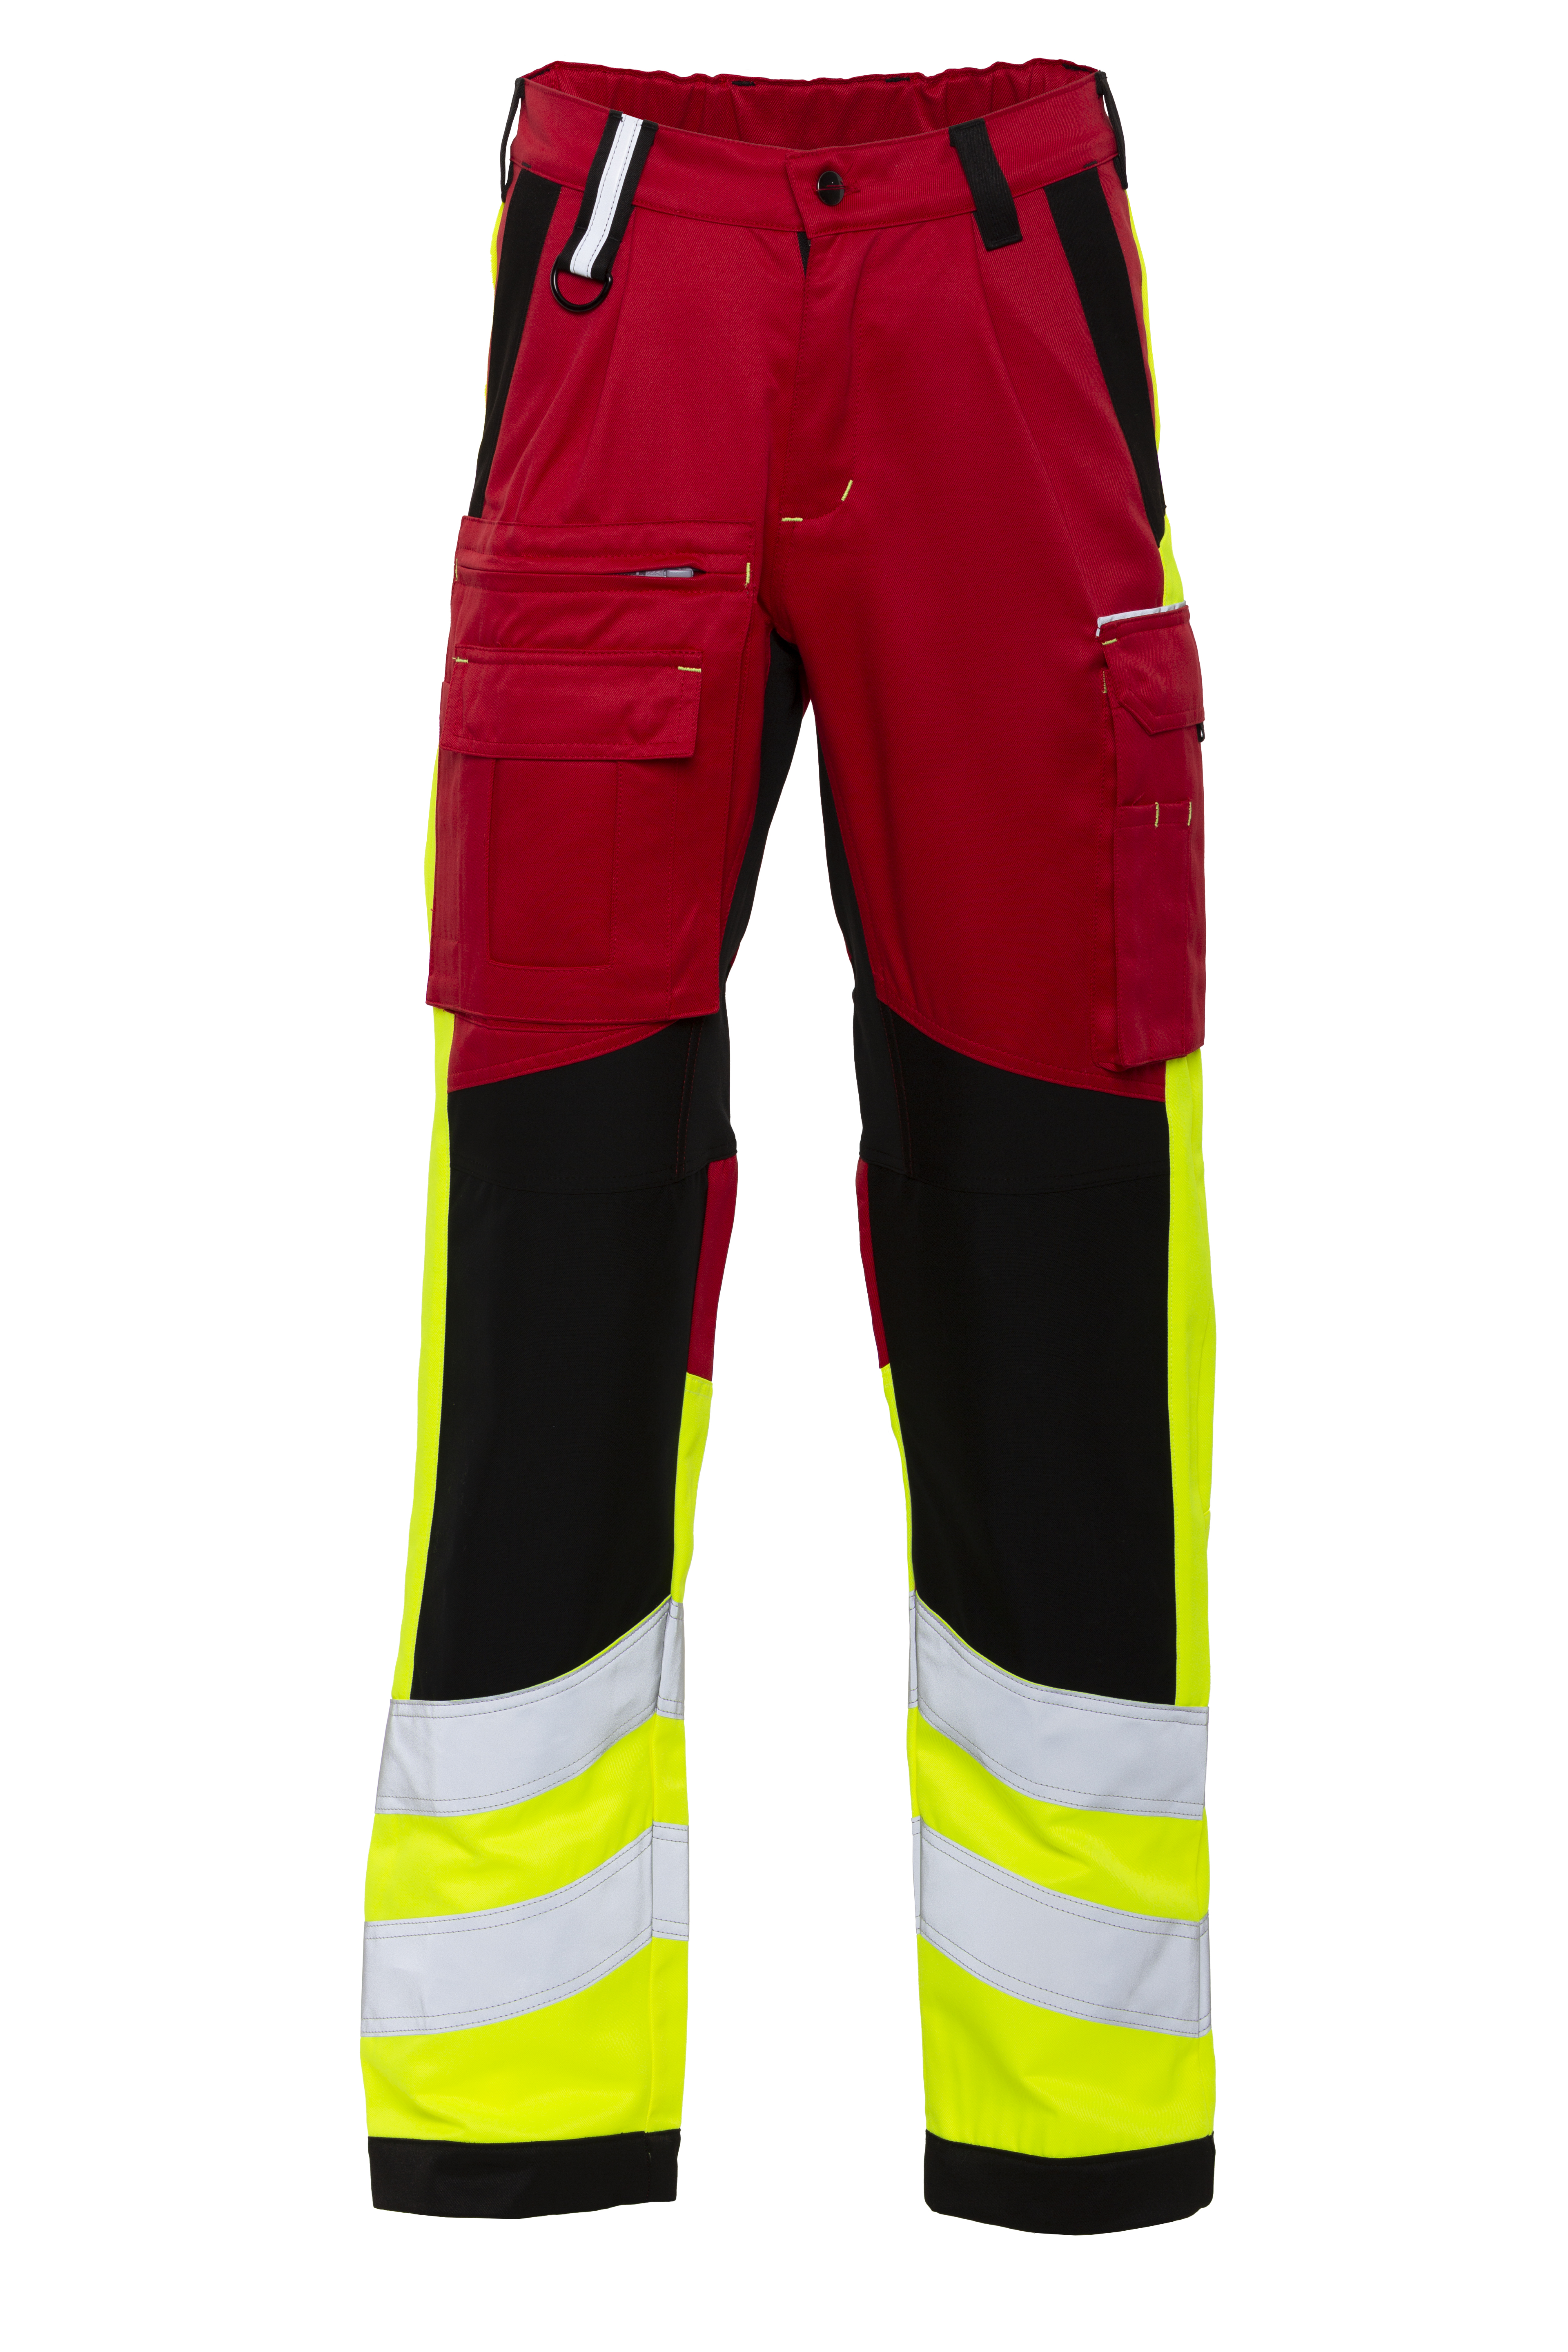 Rescuewear Unisex Hose Stretch HiVis Klasse 1 Rot / Schwarz / Neon Gelb 